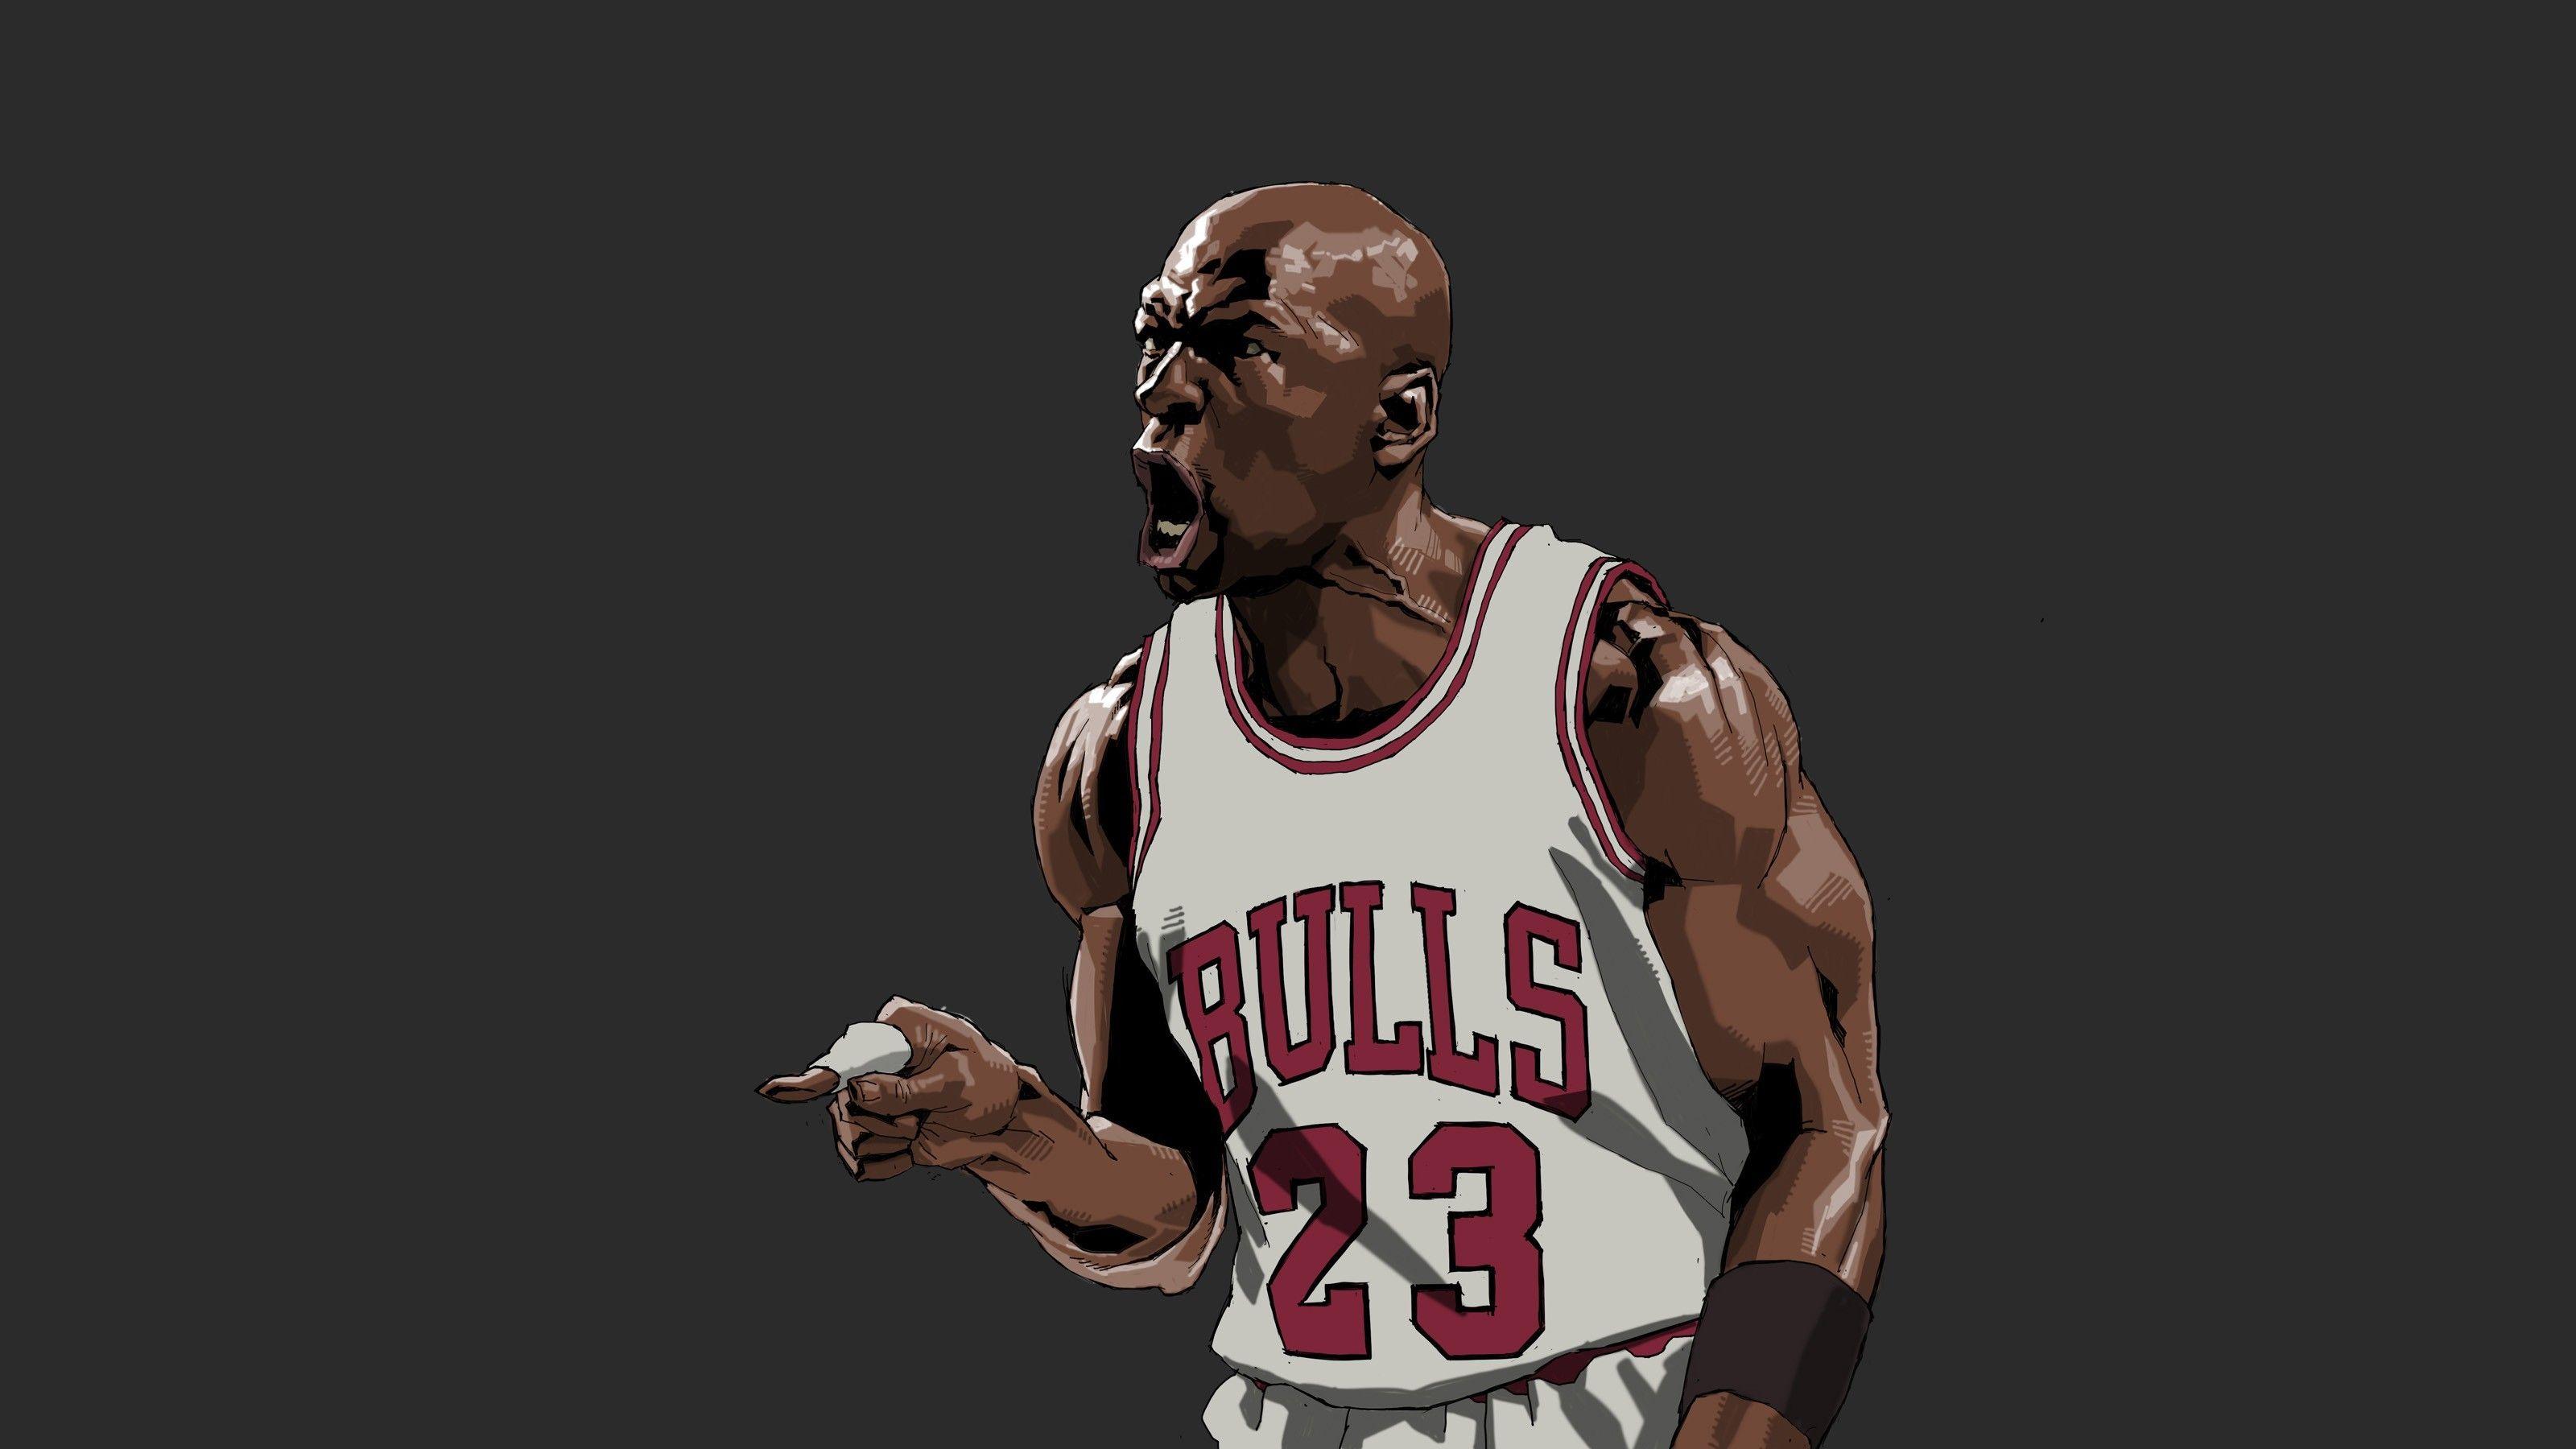 Michael Jordan 4K Wallpapers